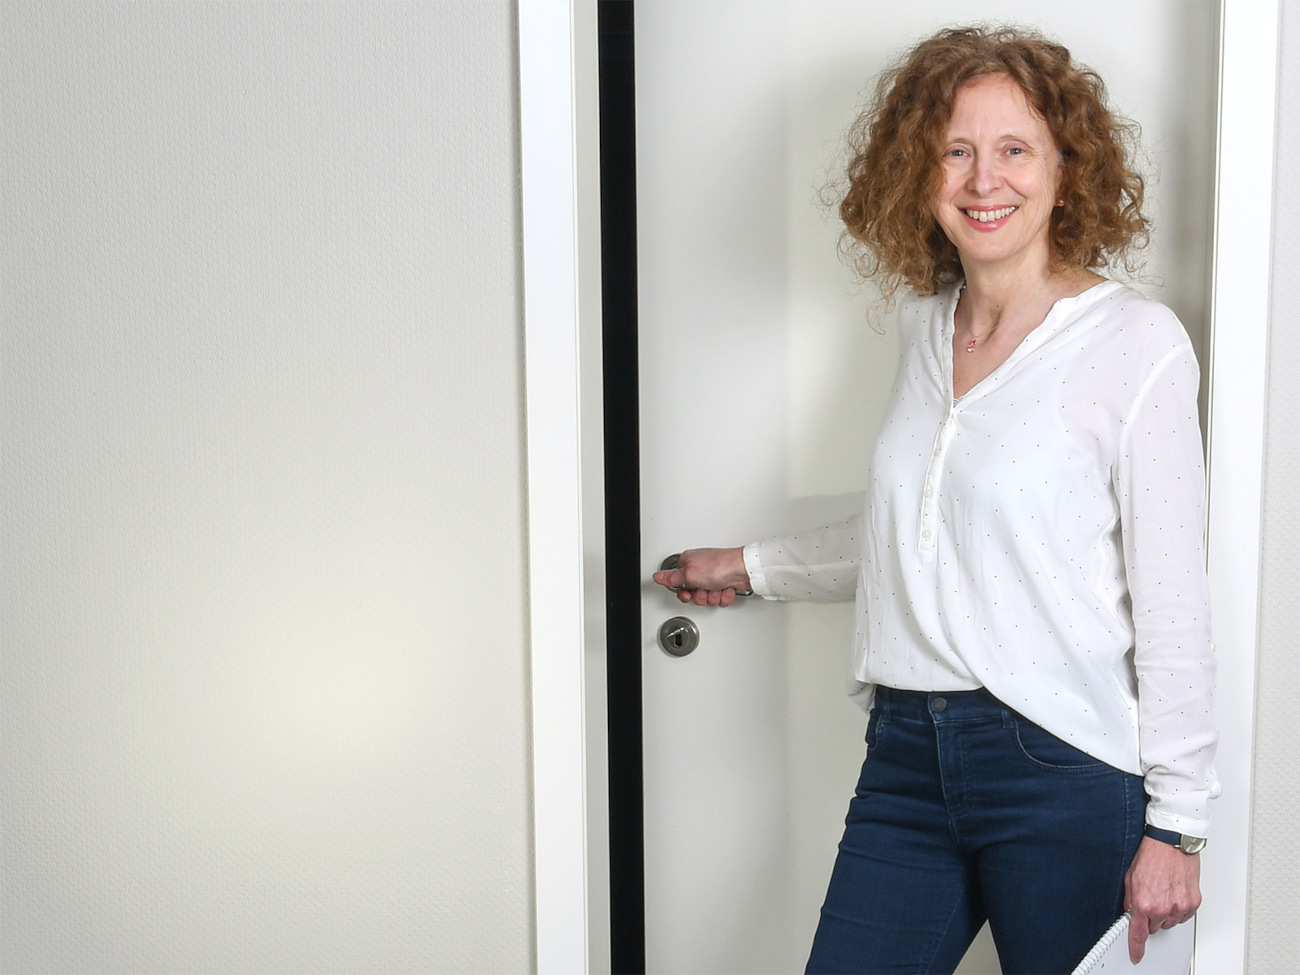 Die habilitierte Universitätslektorin Iris Stahlke steht vor einer weißen Tür. Sie hält die Türklinke in der Hand und schaut lächelnd in die Kamera.